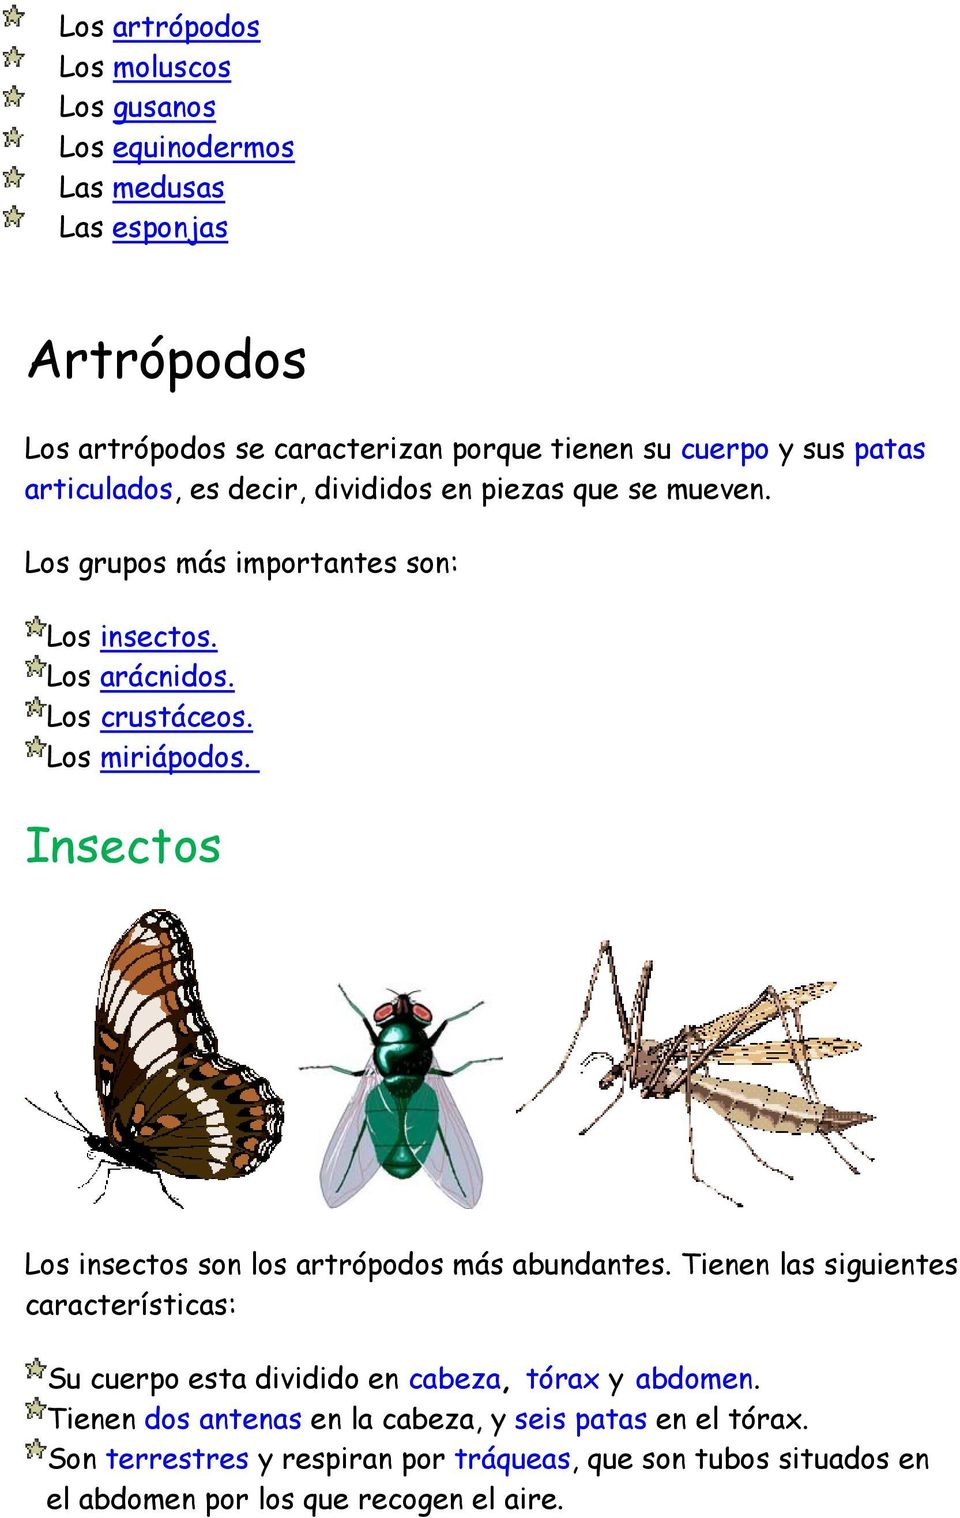 Insectos Los insectos son los artrópodos más abundantes. Tienen las siguientes características: Su cuerpo esta dividido en cabeza, tórax y abdomen.